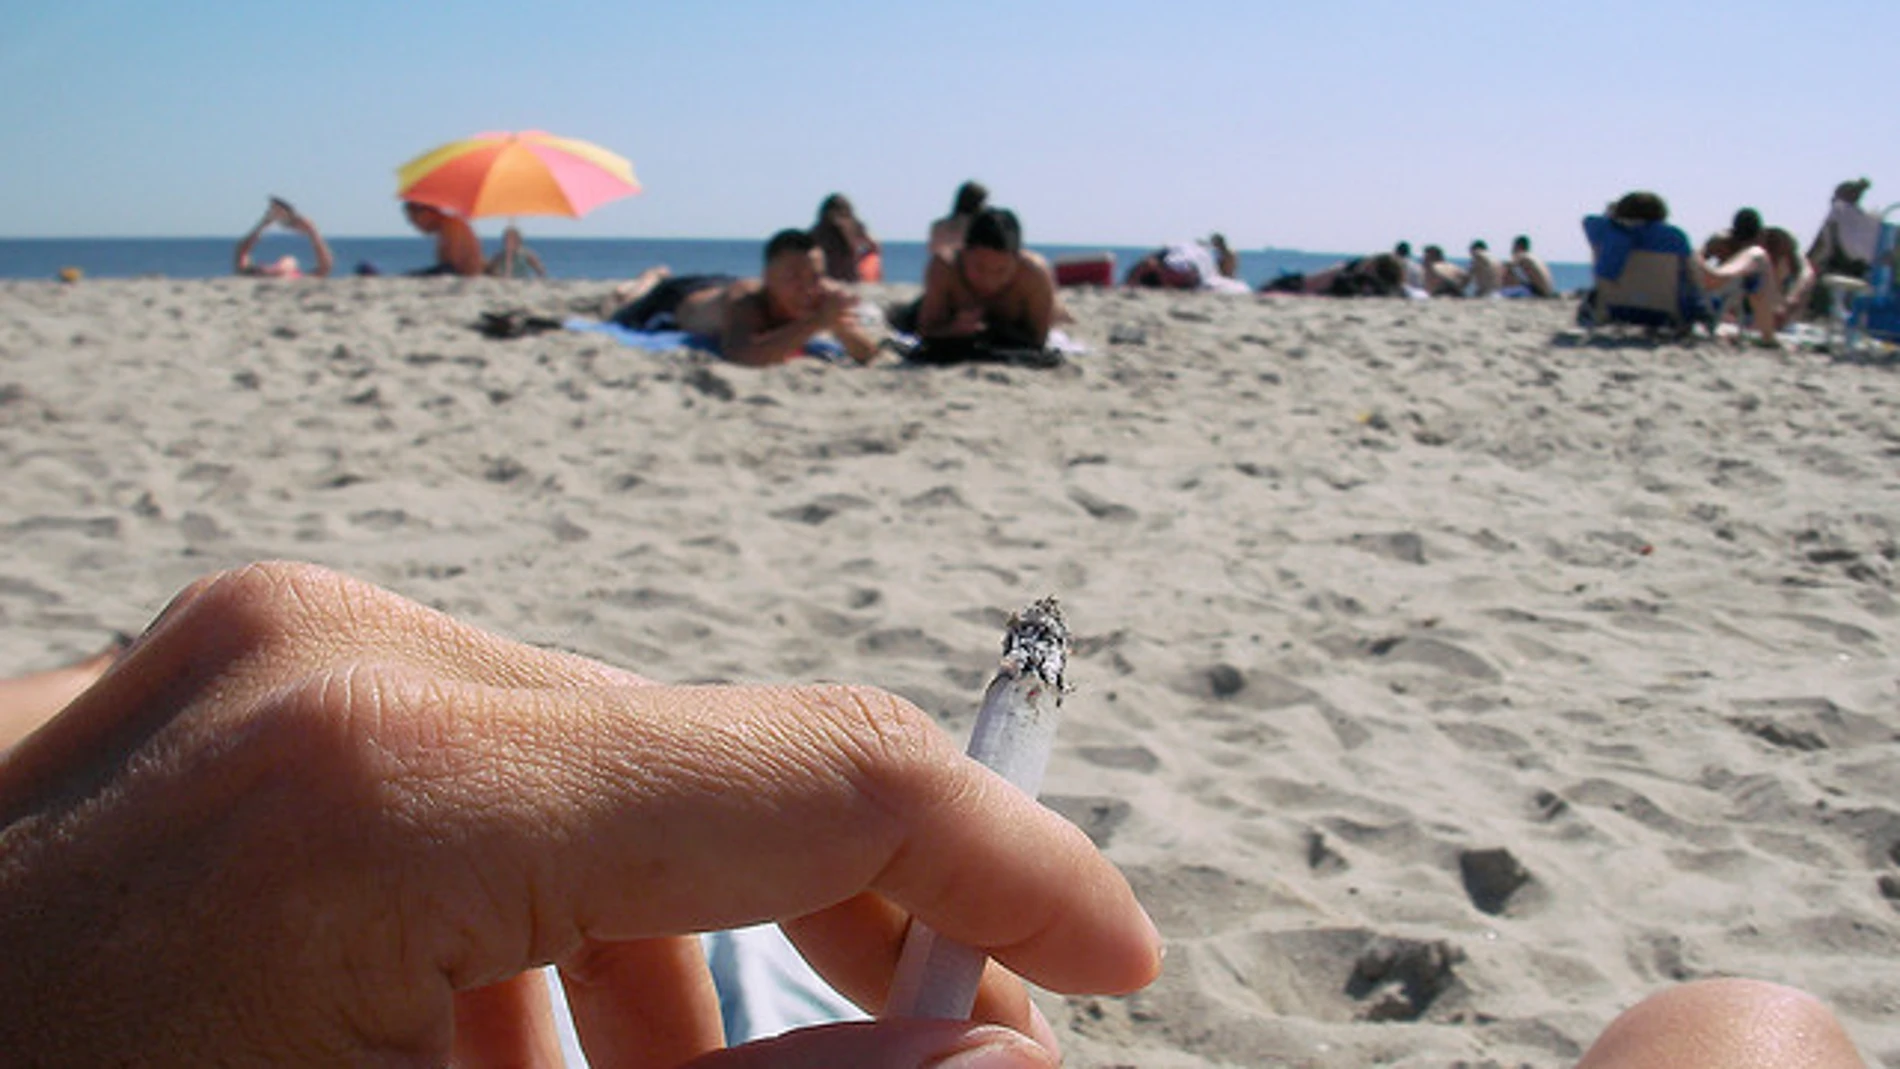 Fumar en la playa puede costar 450 euros